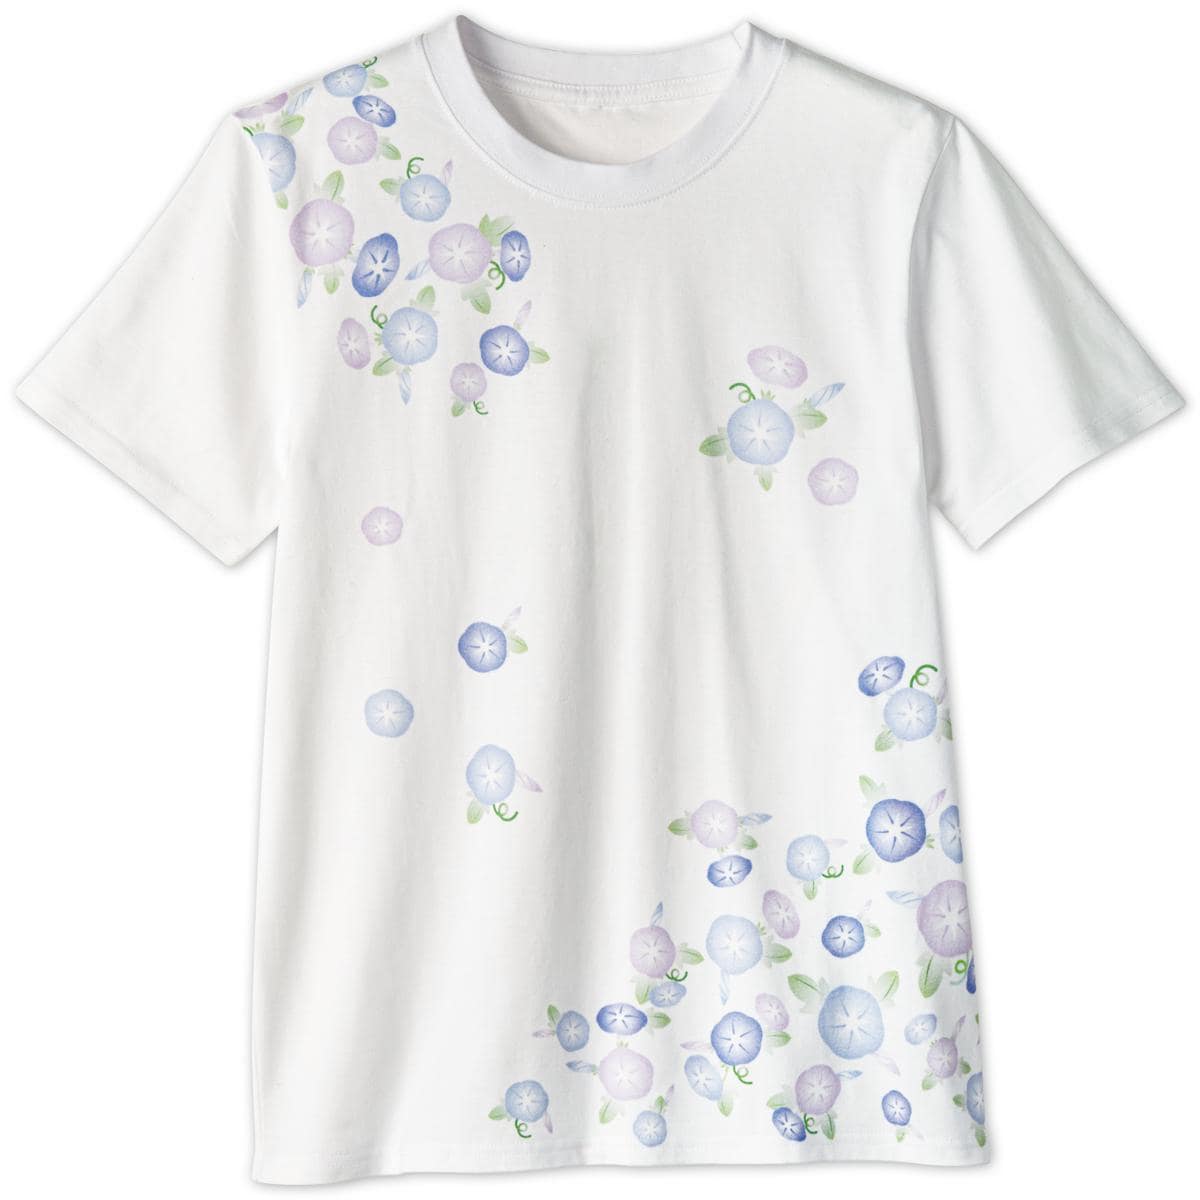 プリントTシャツ(綿100%・洗濯機OK) - ファッション通販ならセシール 